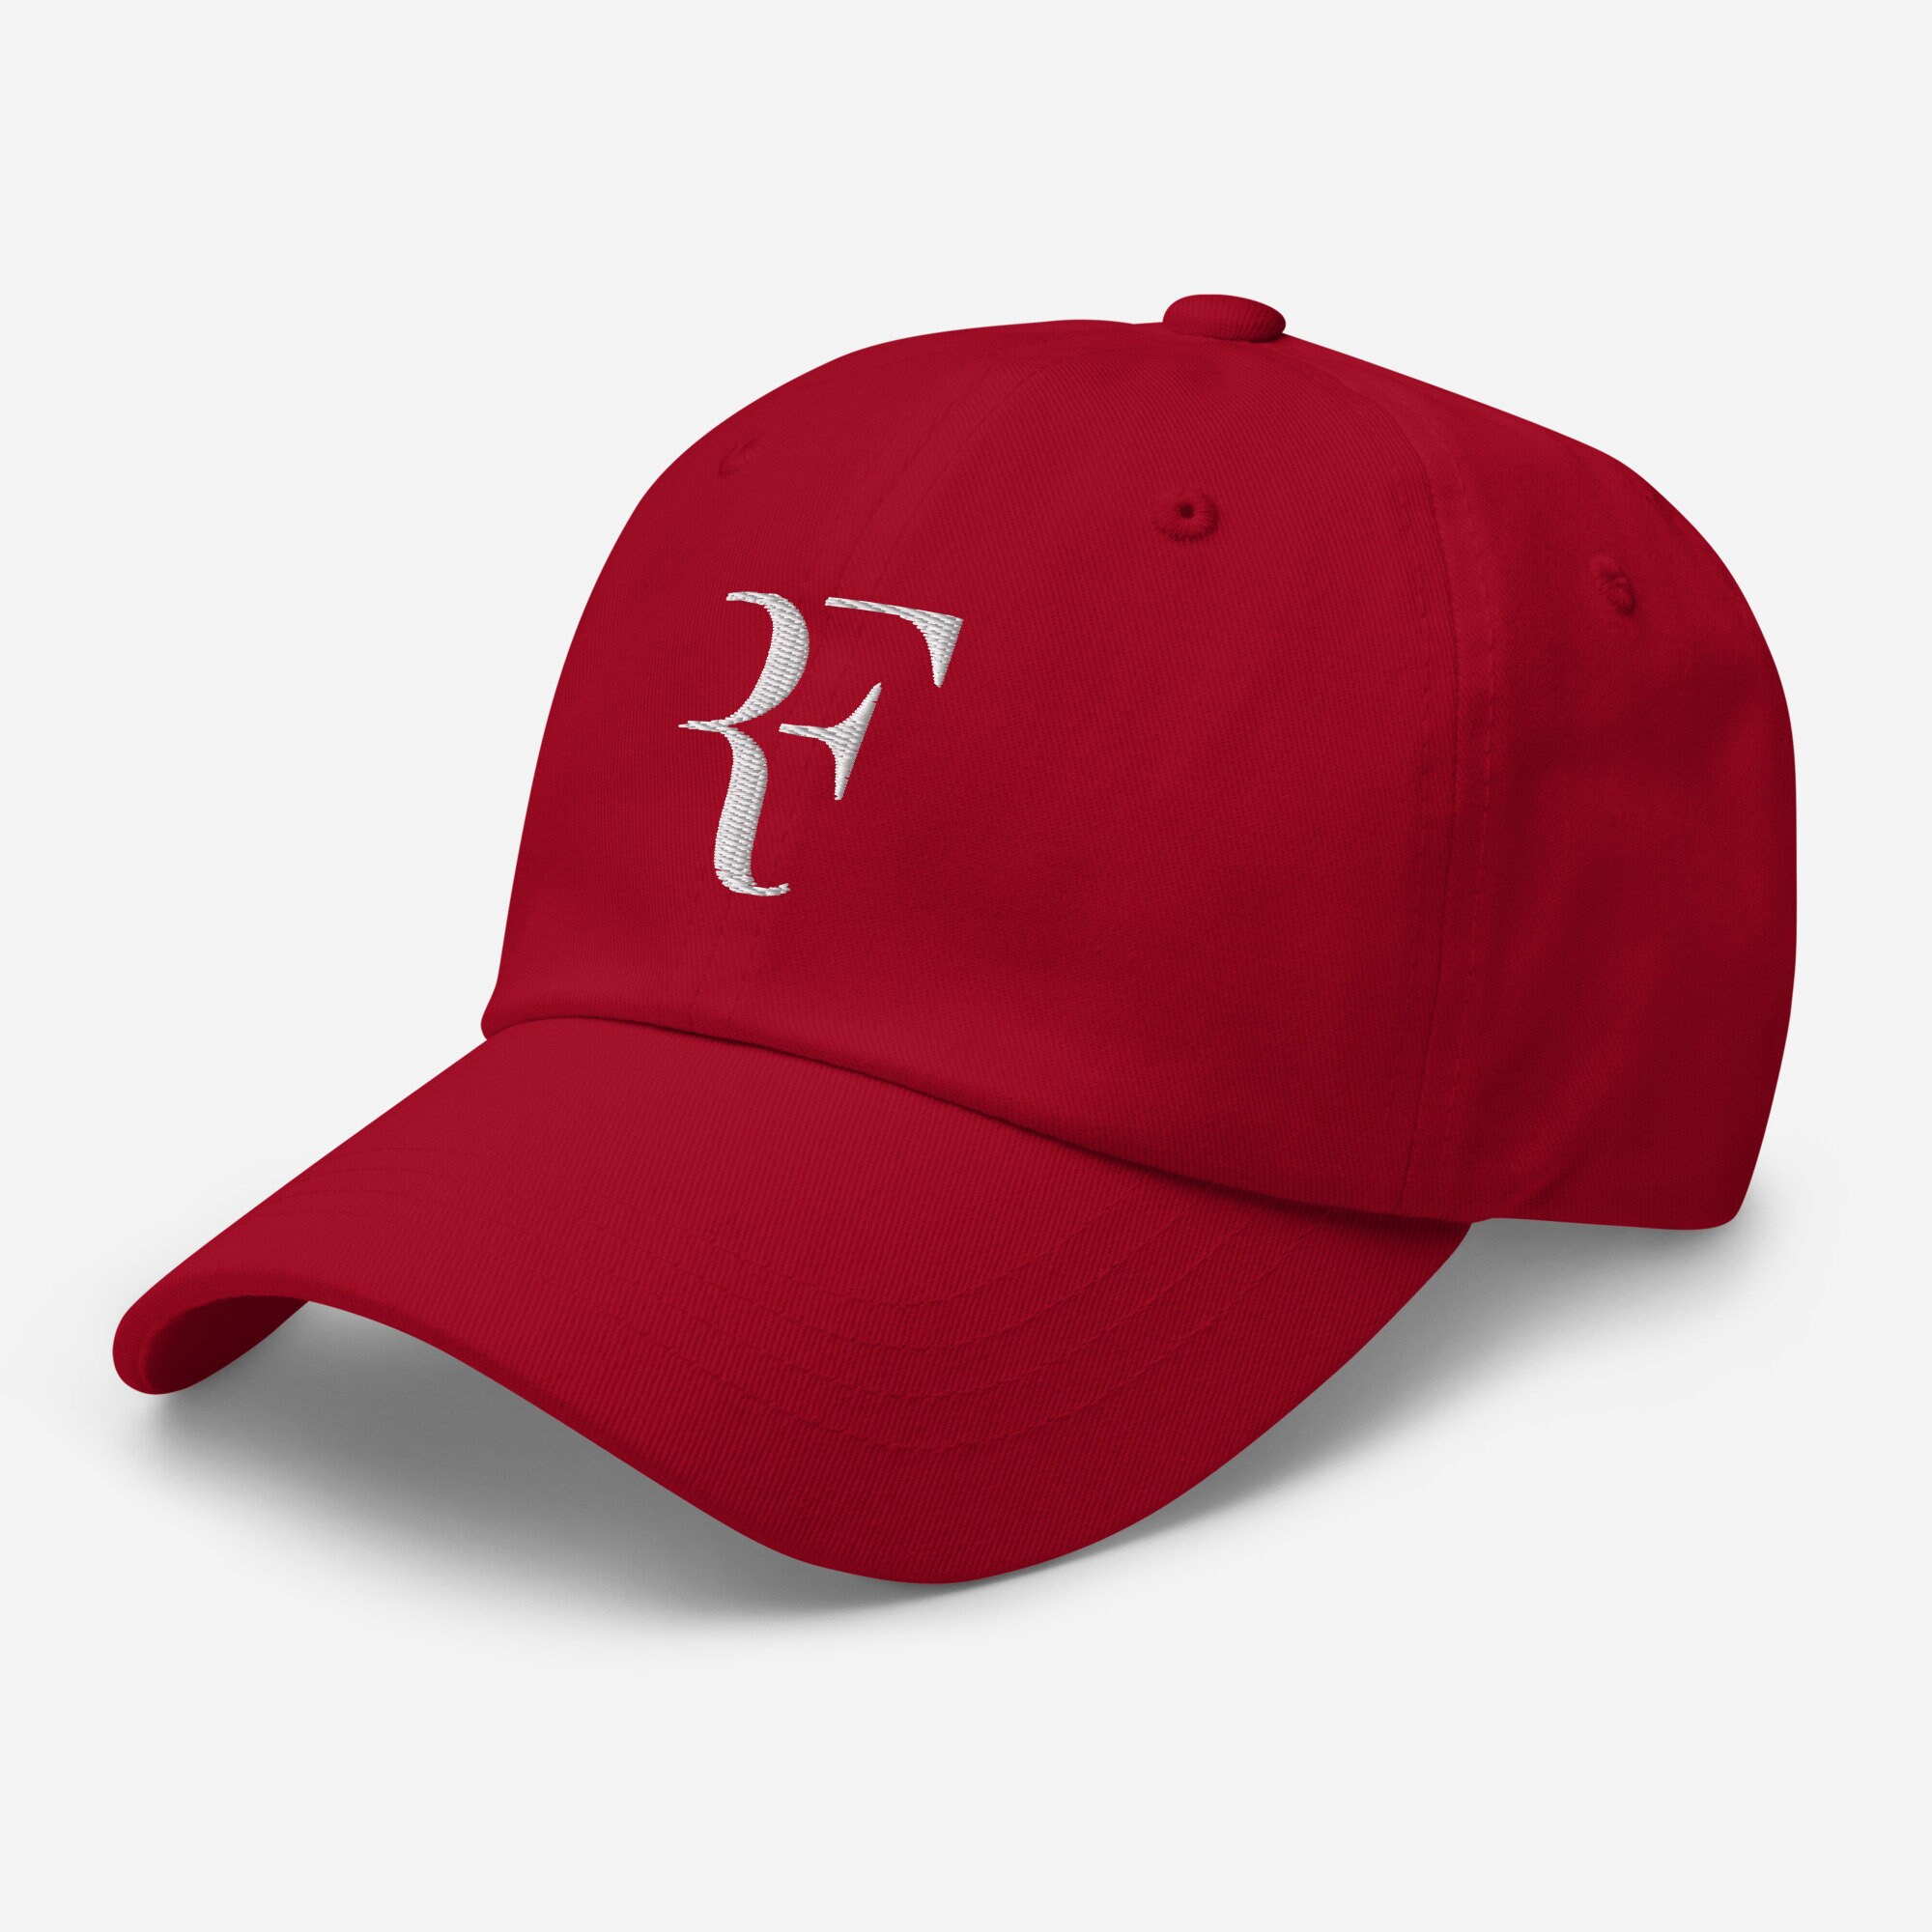 Roger Federer RF Dad hat Embroidered Hat